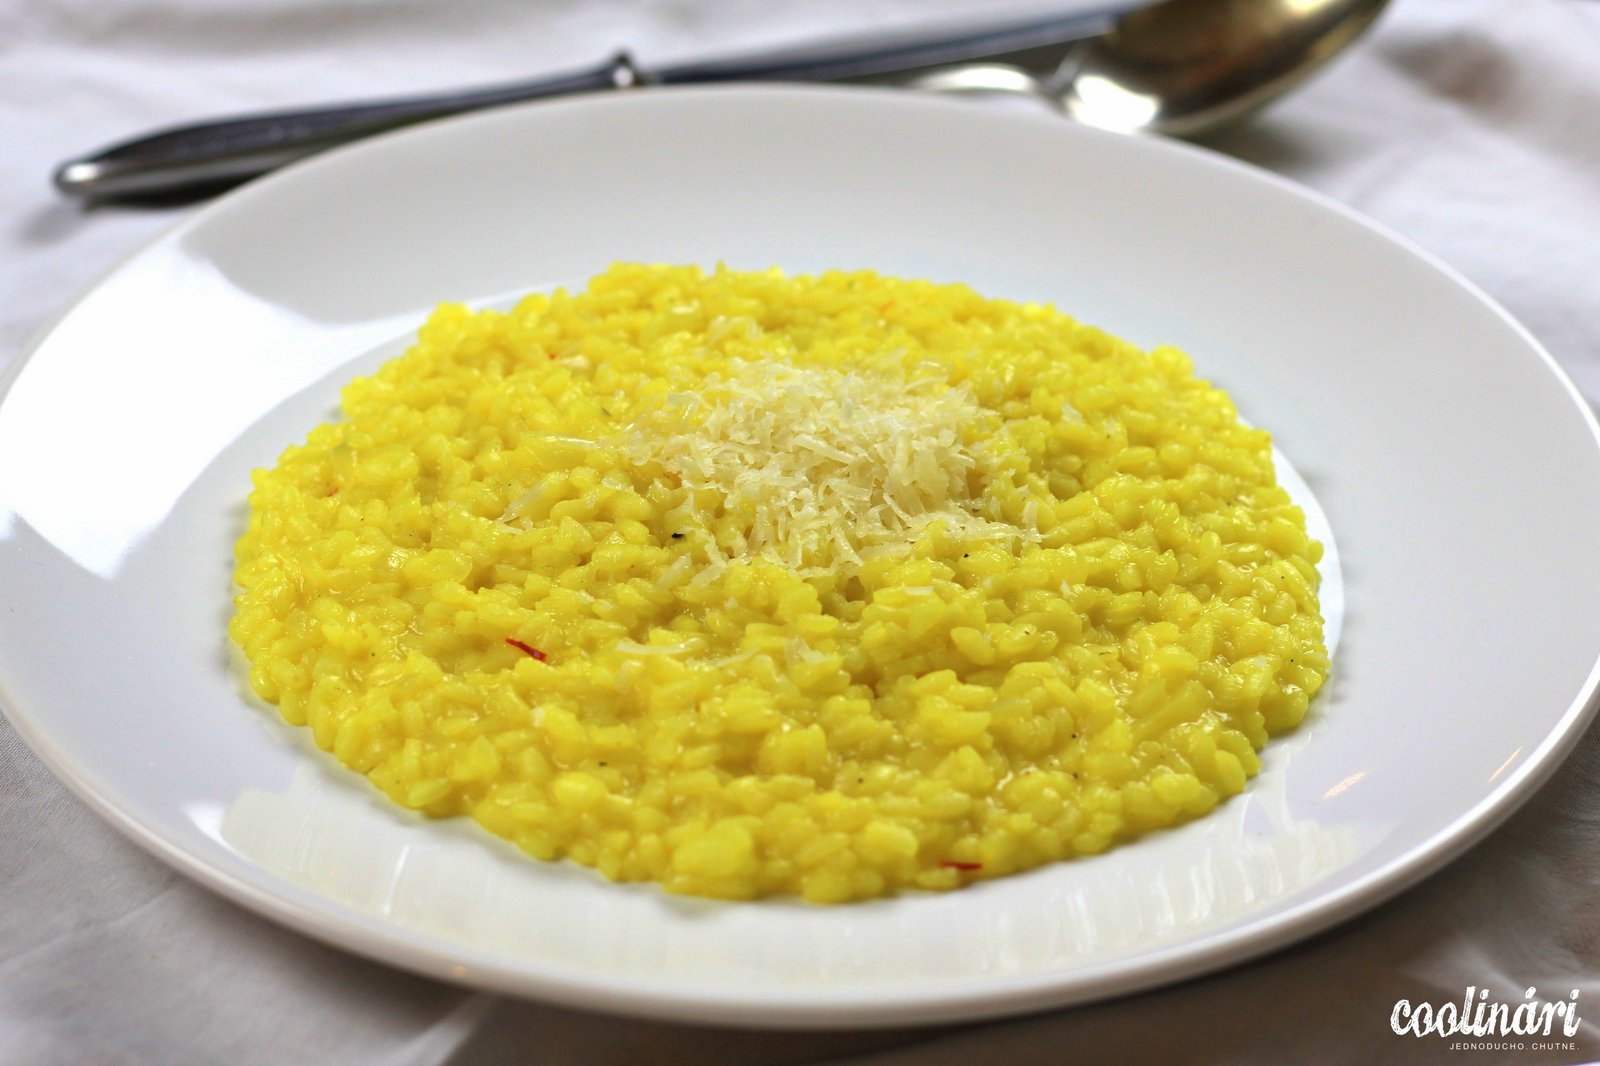 risotto alla milanese, milánske rizoto, šafránové rizoto